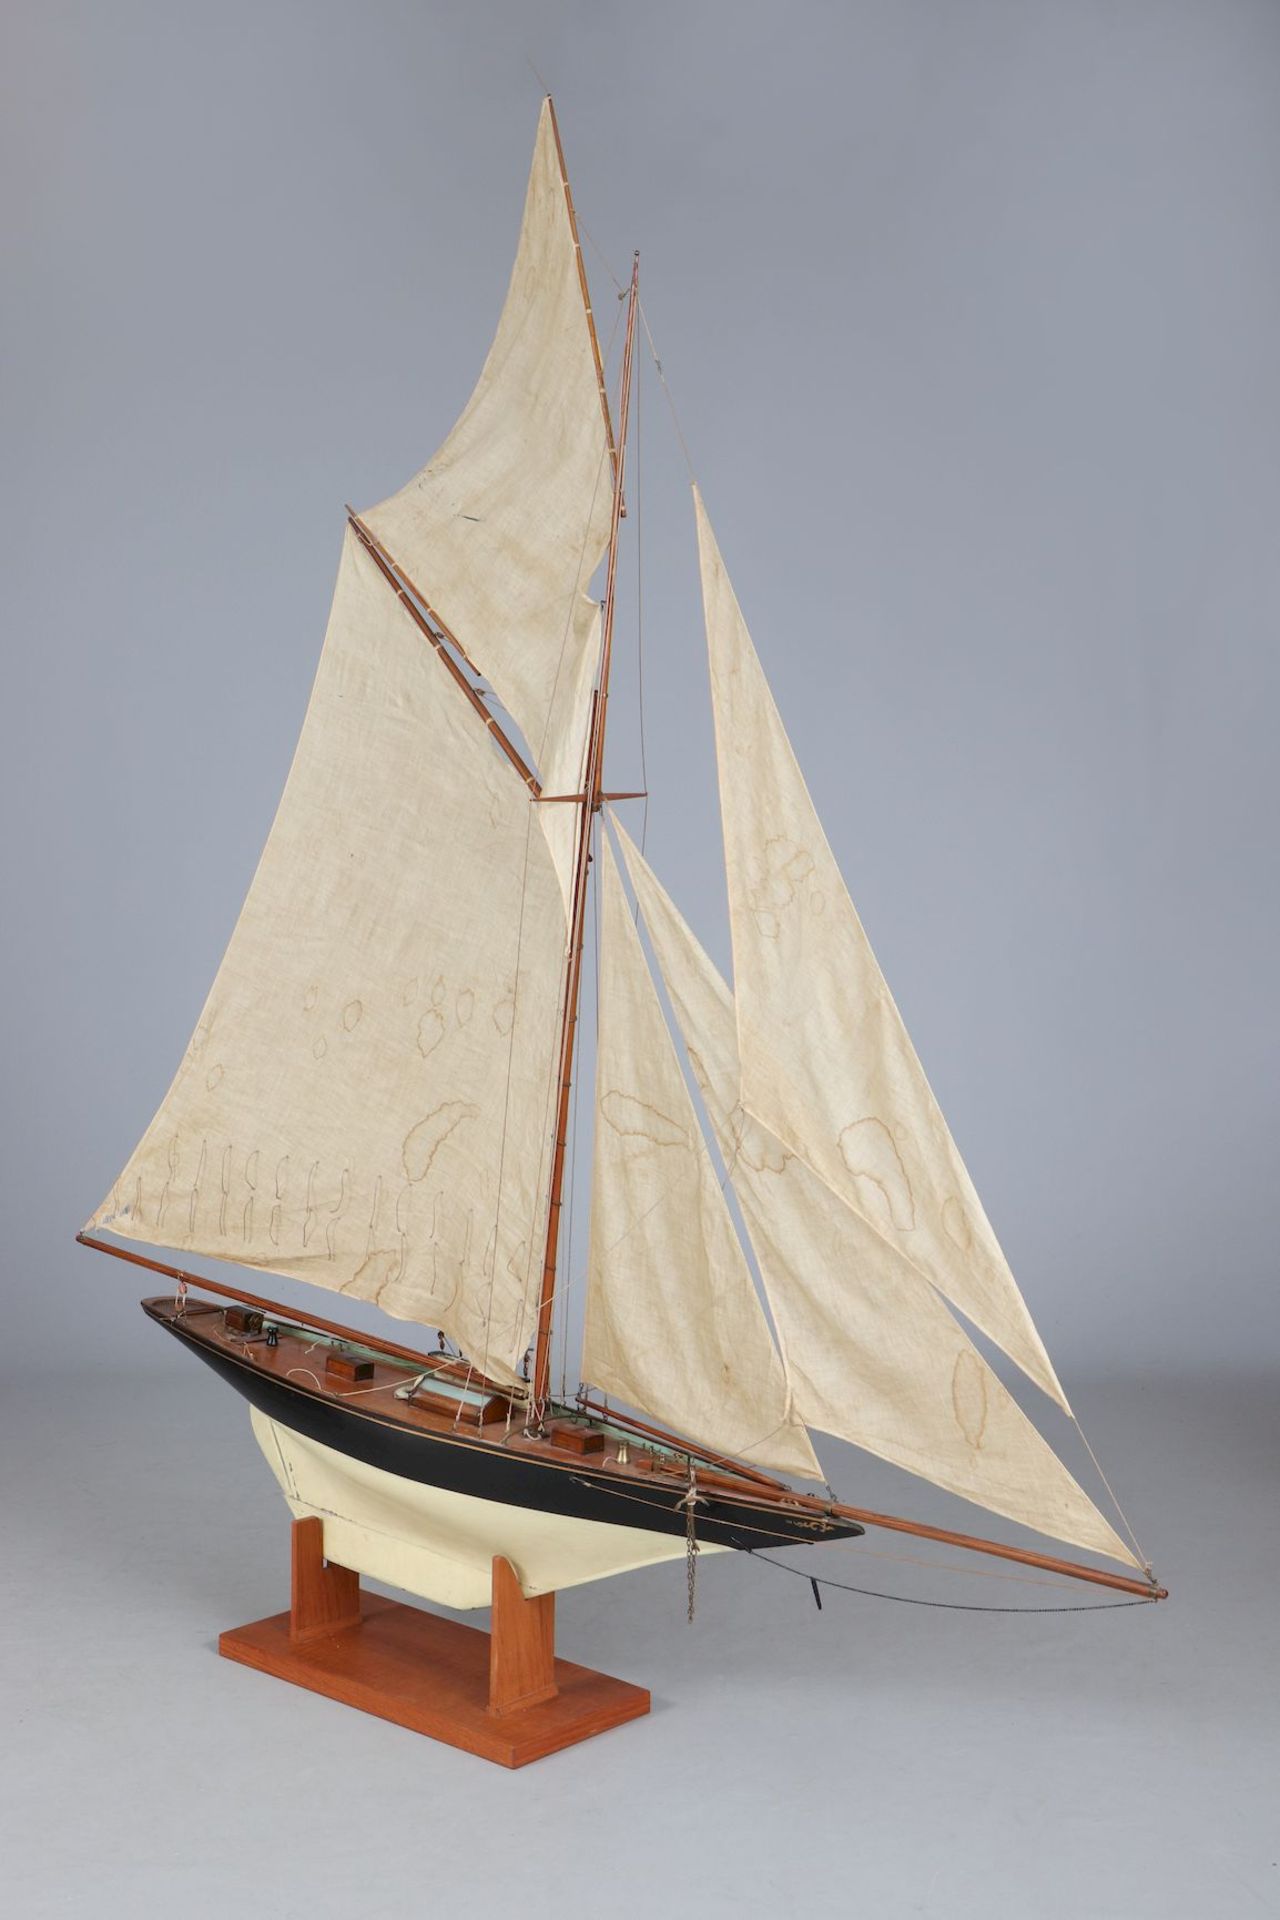 Modell eines frühen Segelschiffes ¨Yacht¨ - Bild 3 aus 5